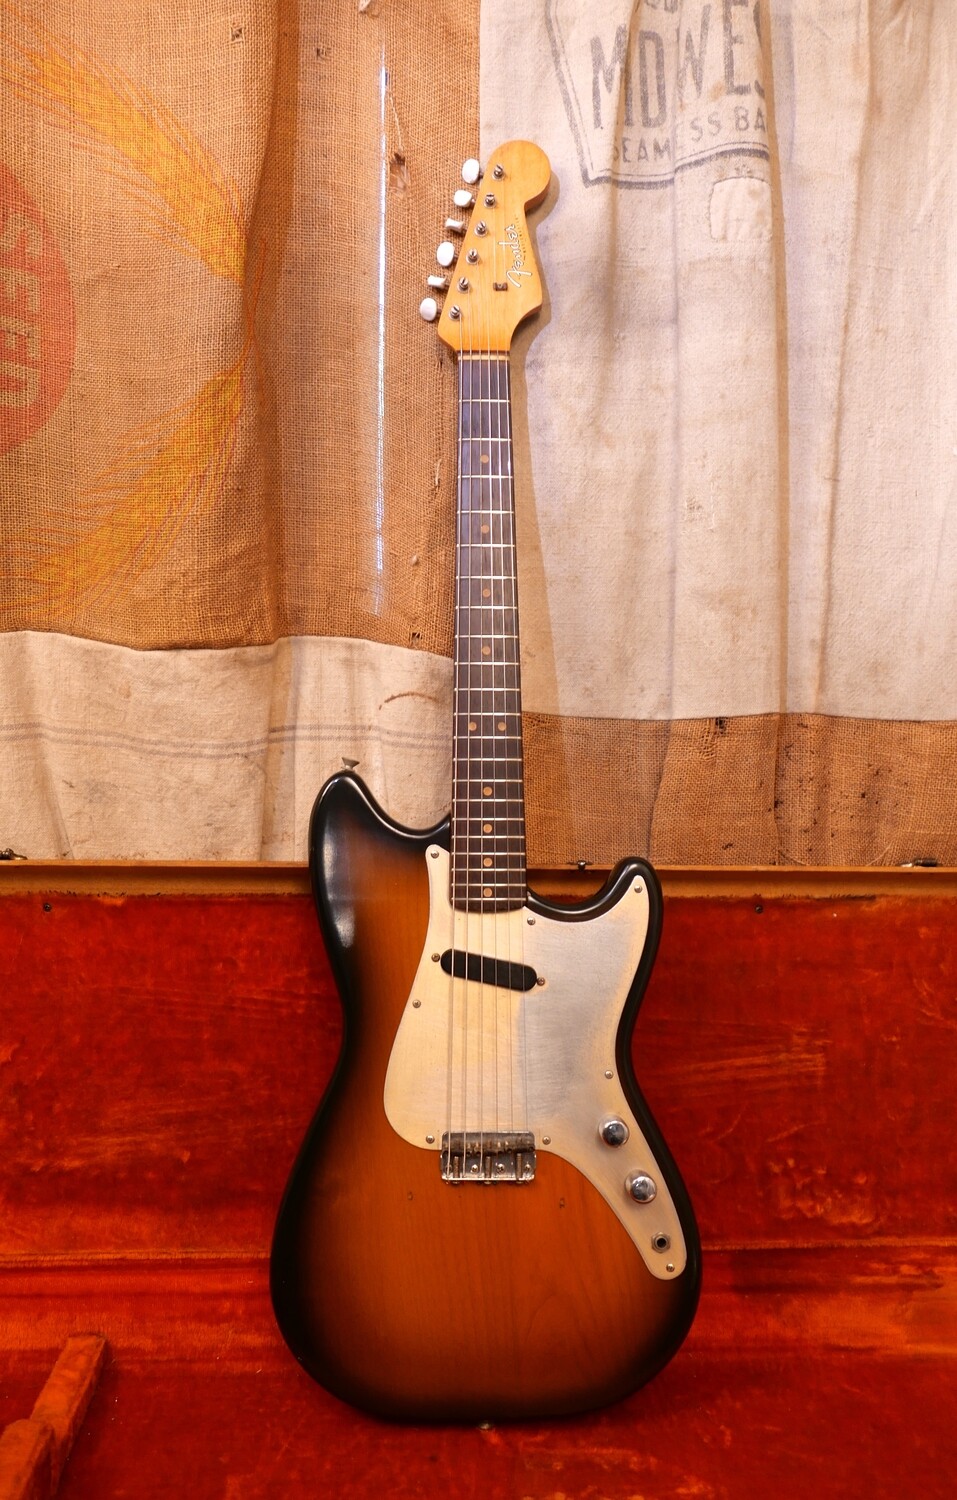 1964 Fender Musicmaster Sunburst Refin